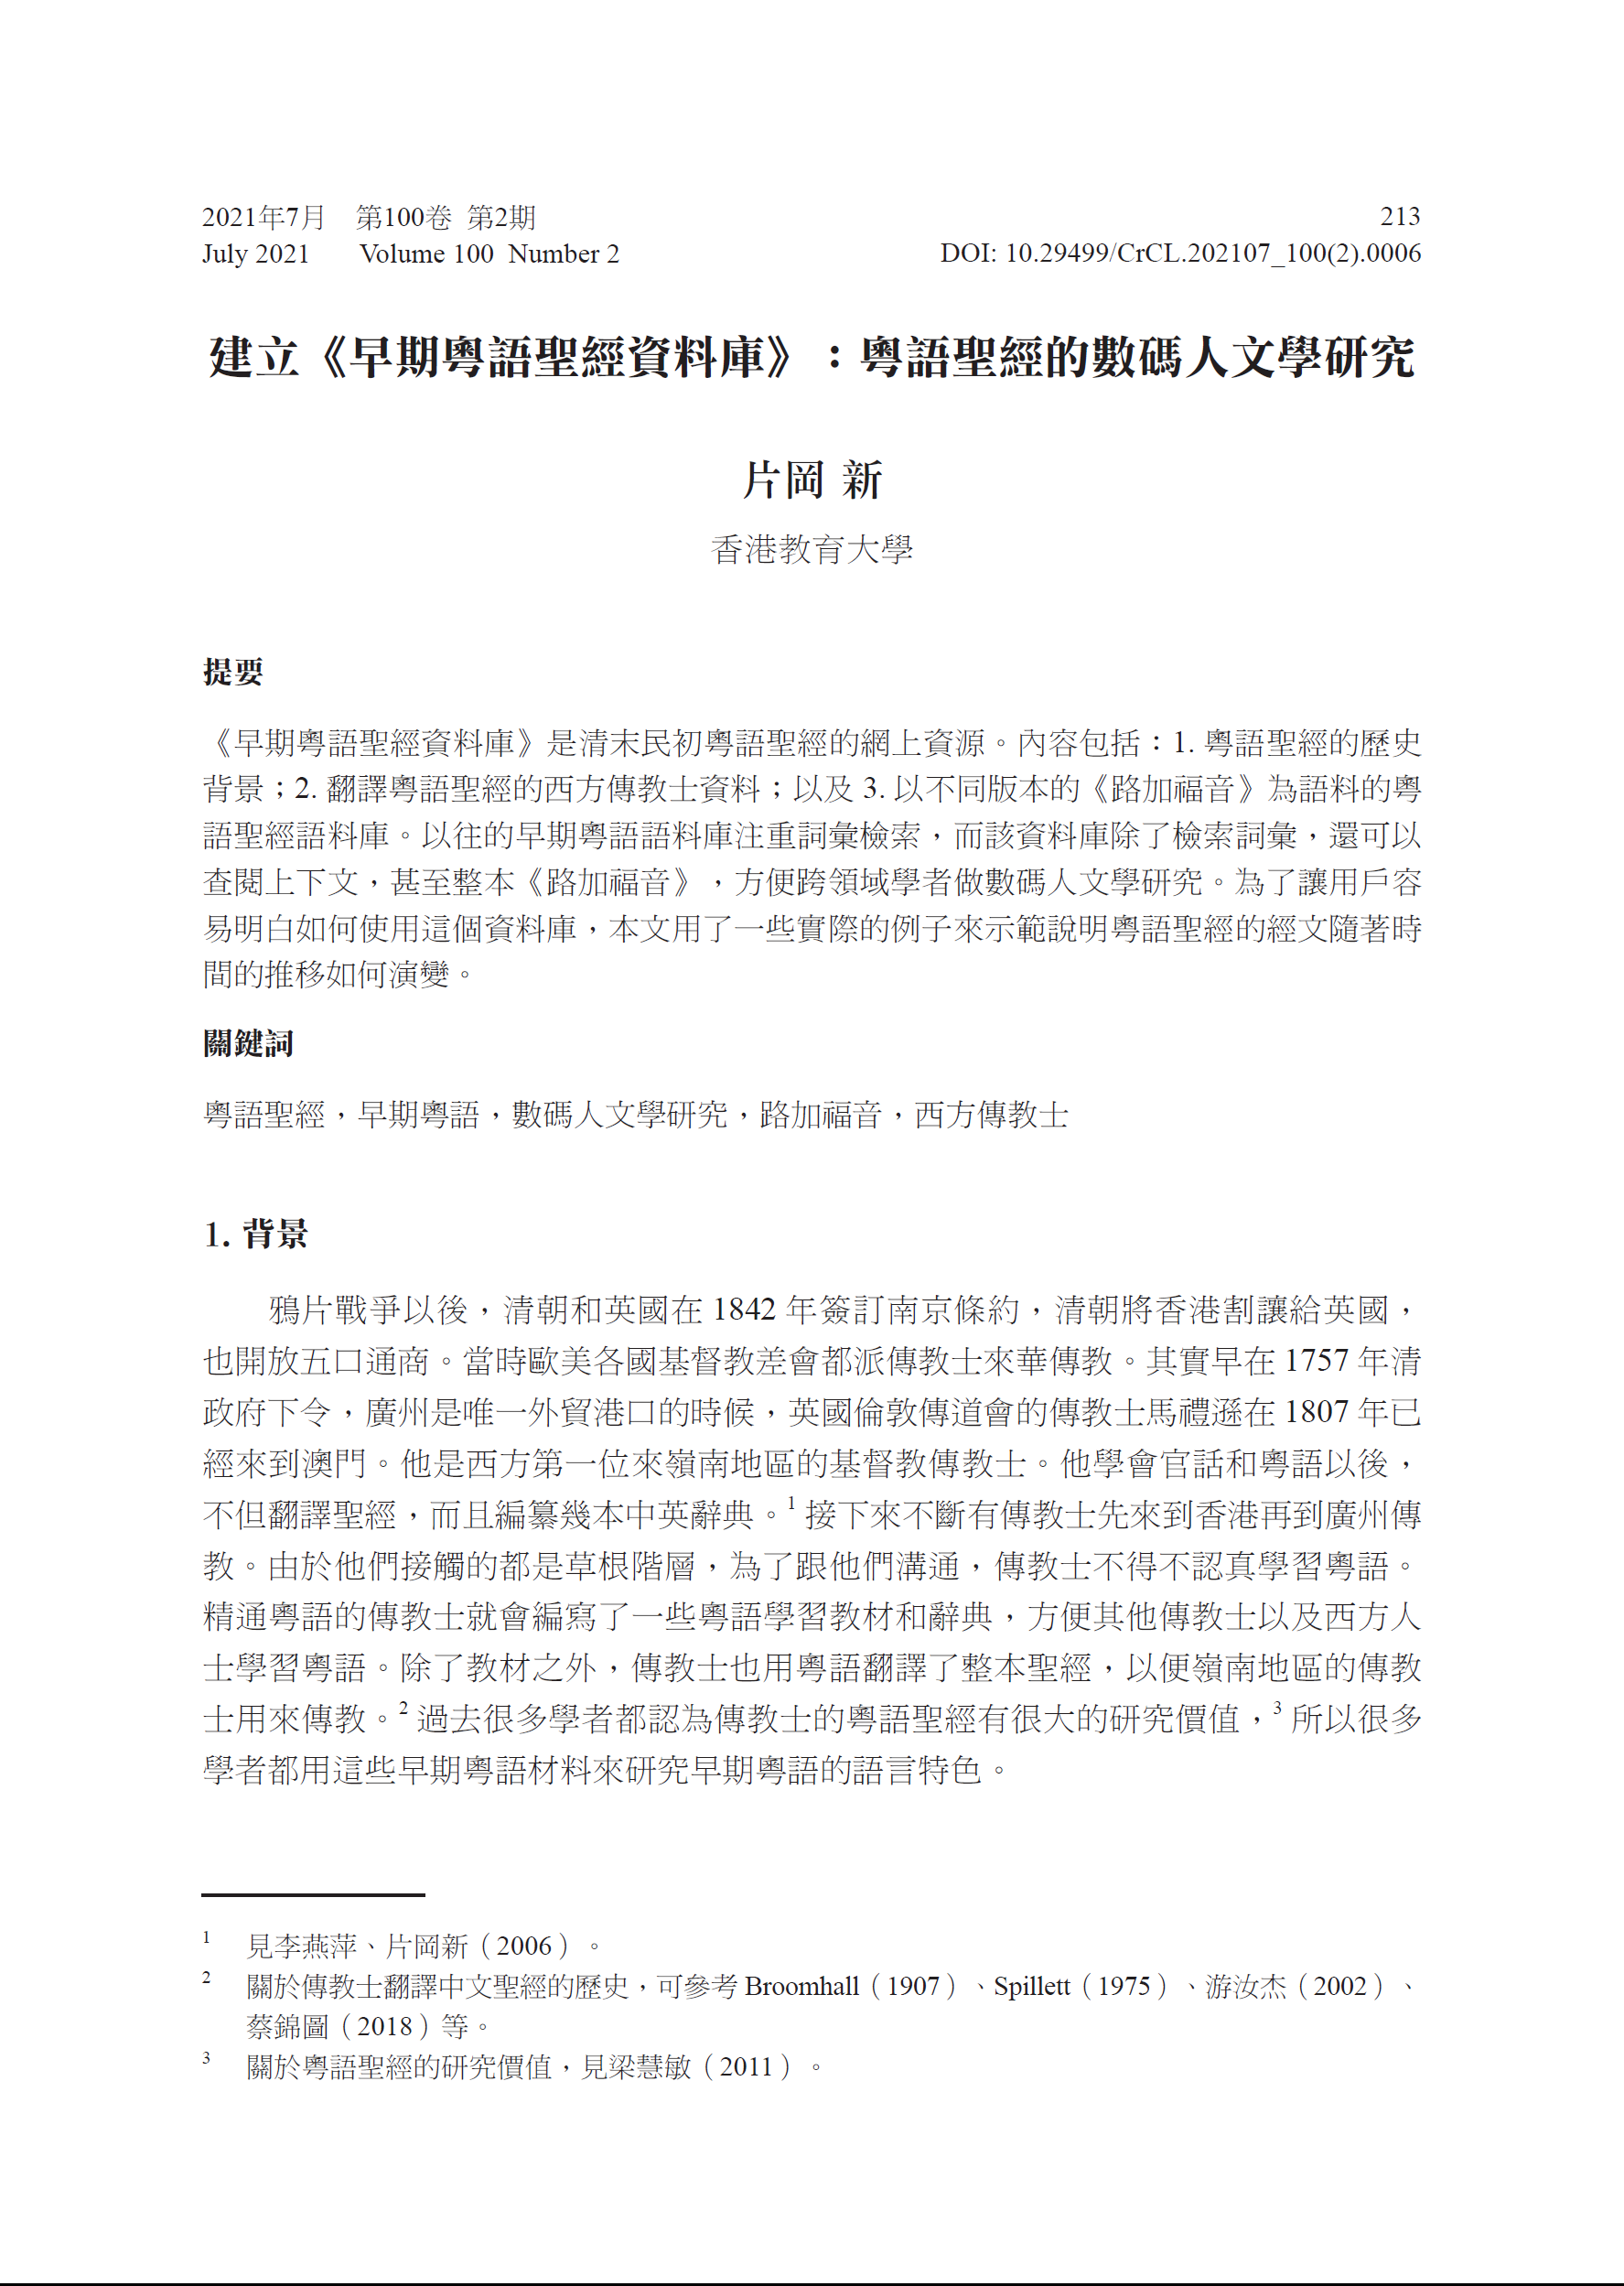 中文研究报告《建立《粤语圣经资料库》：早期粤语的数码人文学研究》